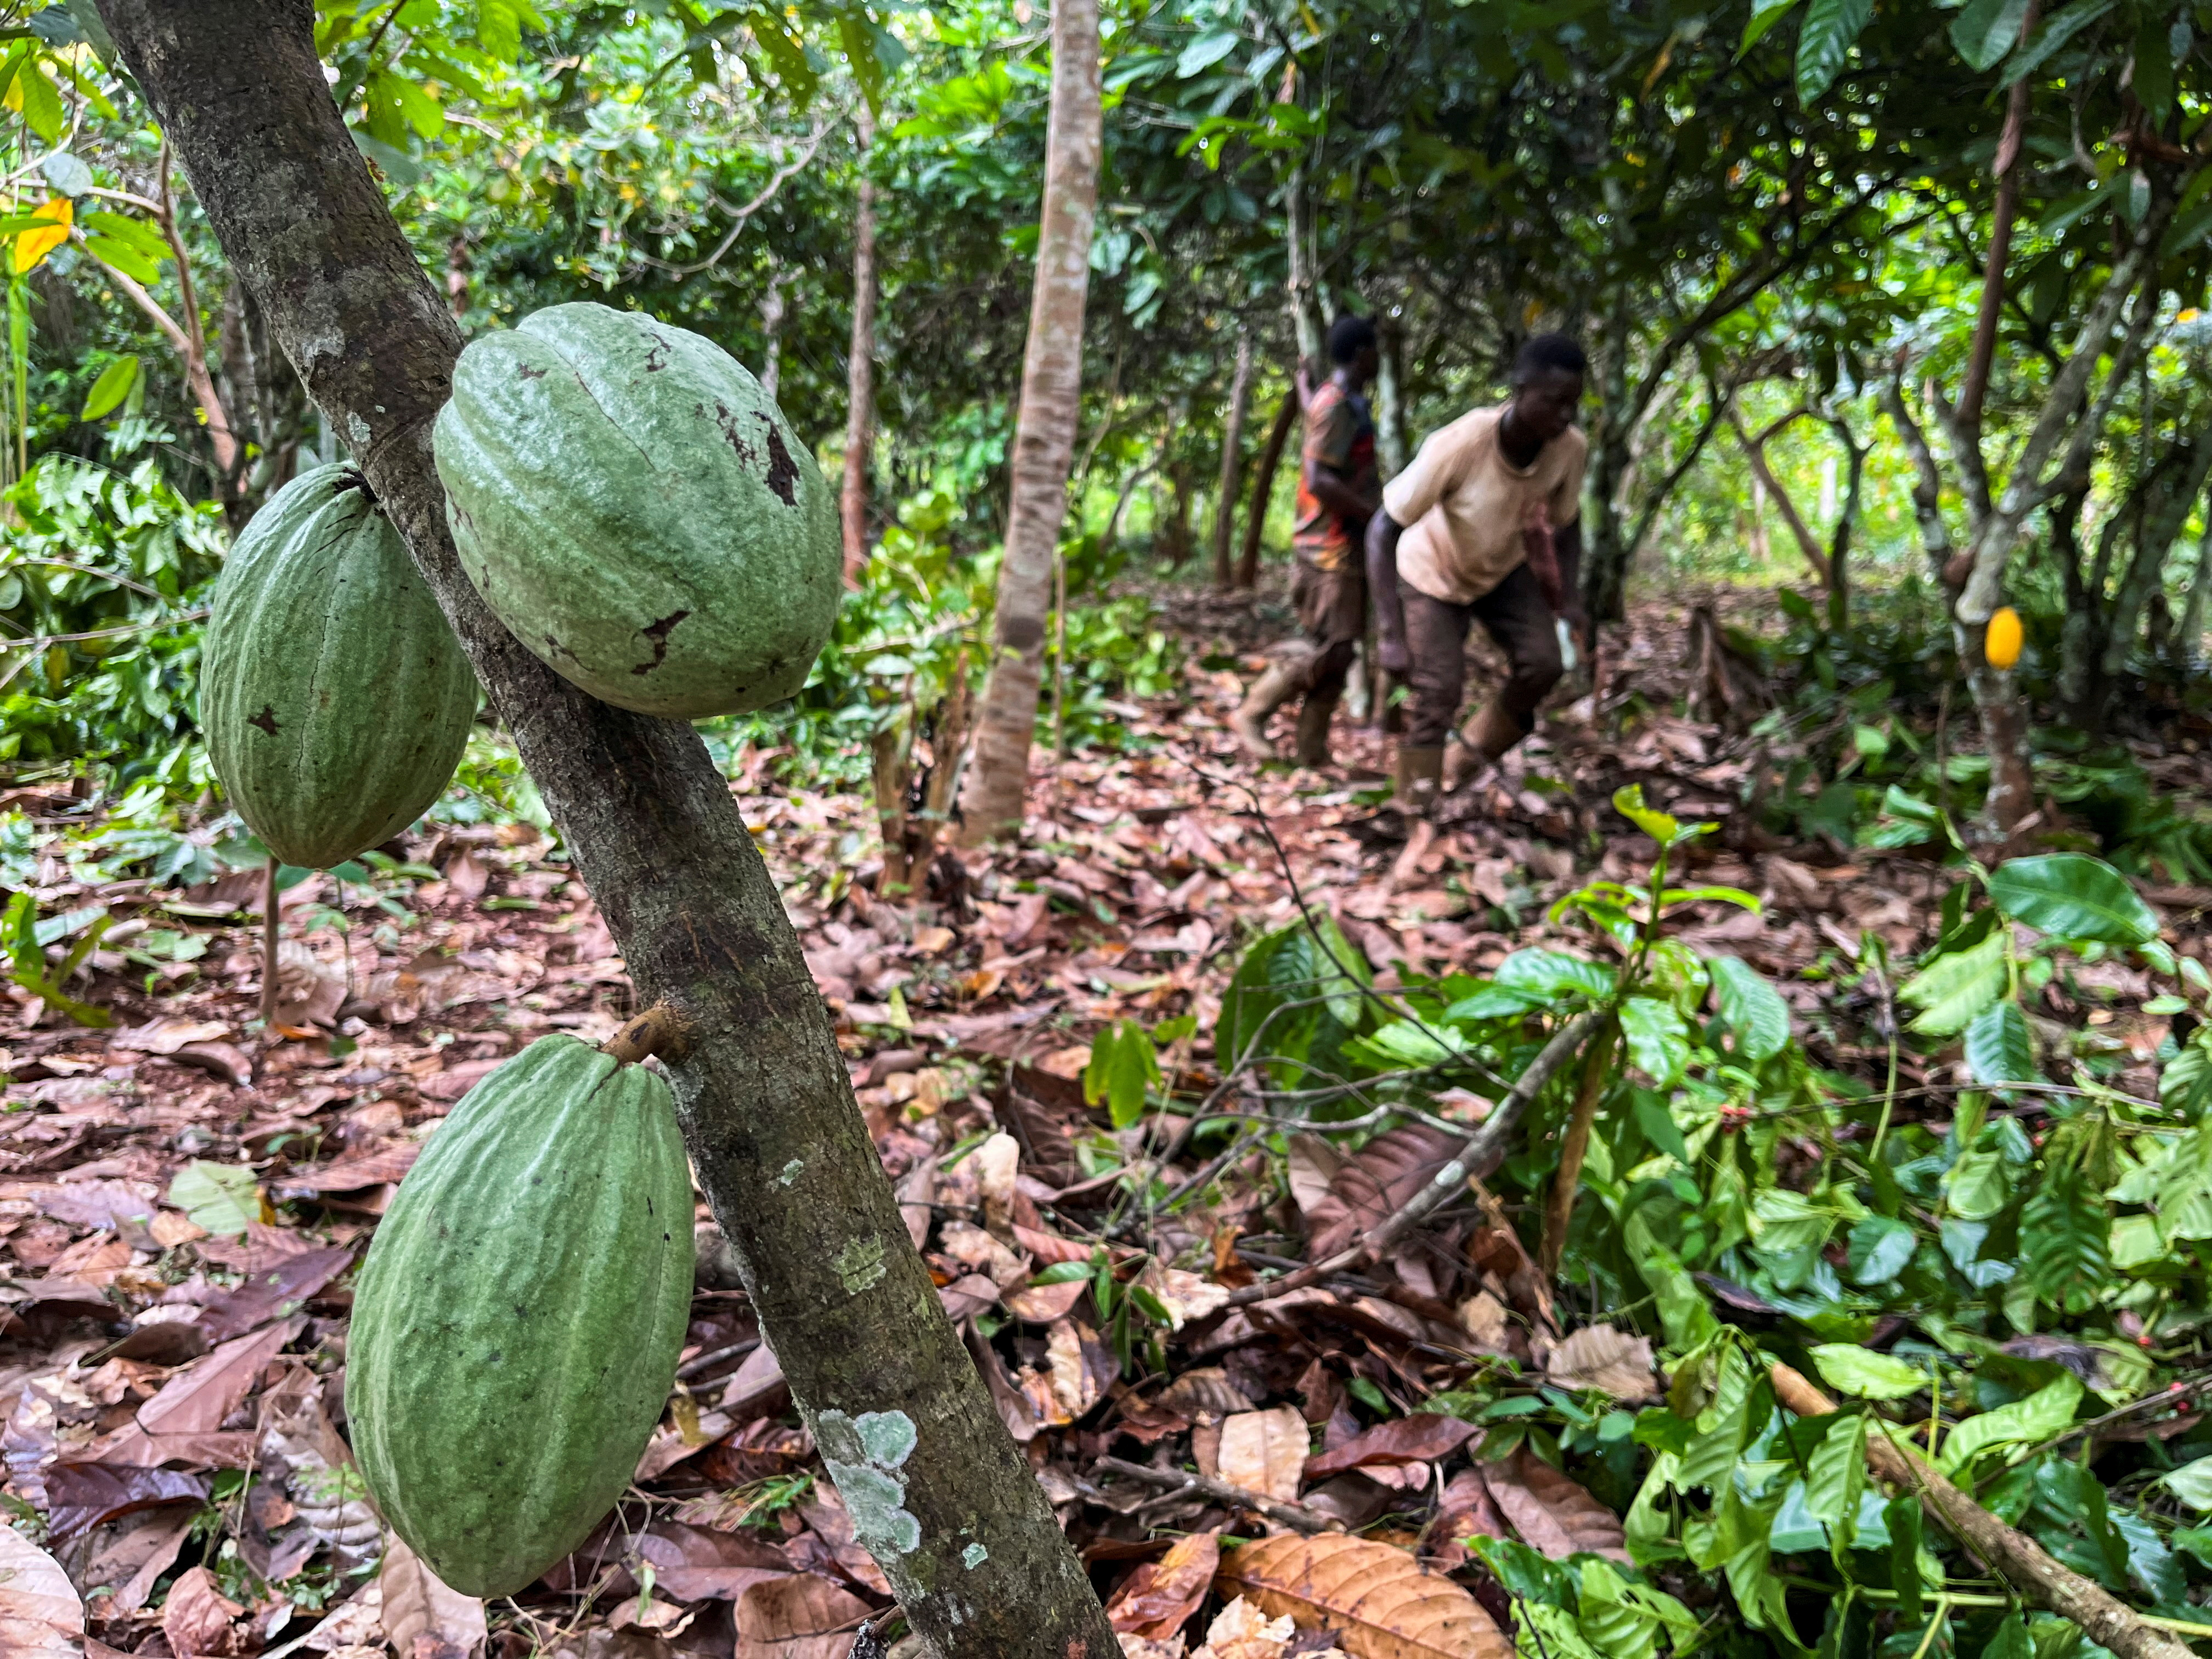 Farmers work at a cocoa farm in Daloa